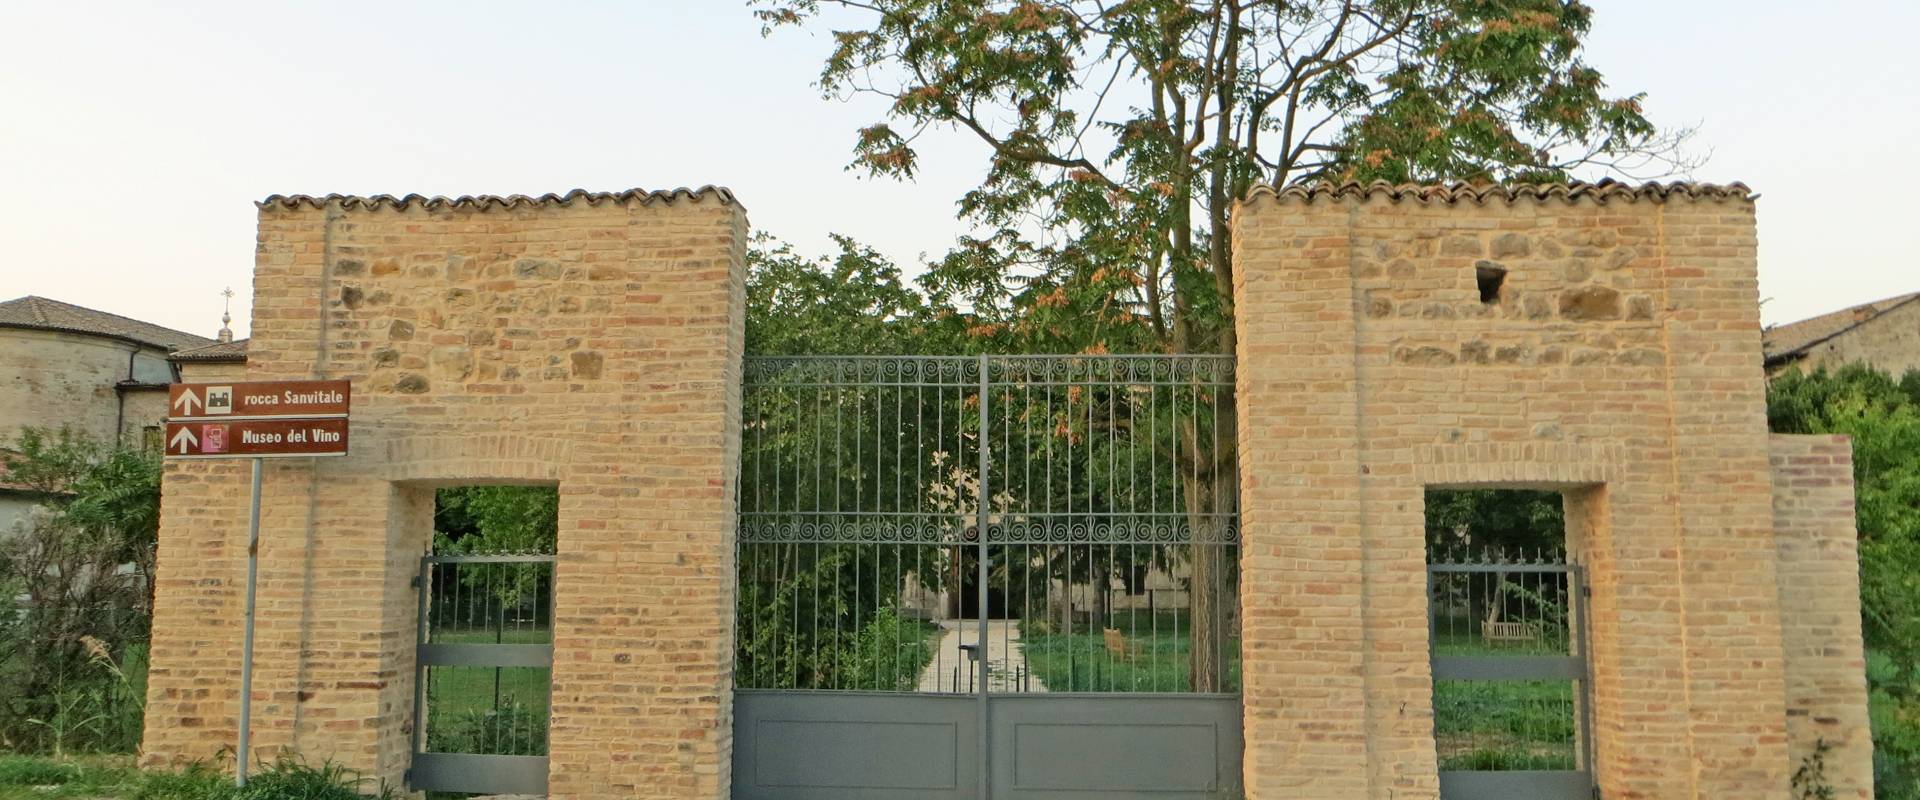 Rocca Sanvitale (Sala Baganza) - cancellata d'ingresso posteriore 2019-09-16 foto di Parma198